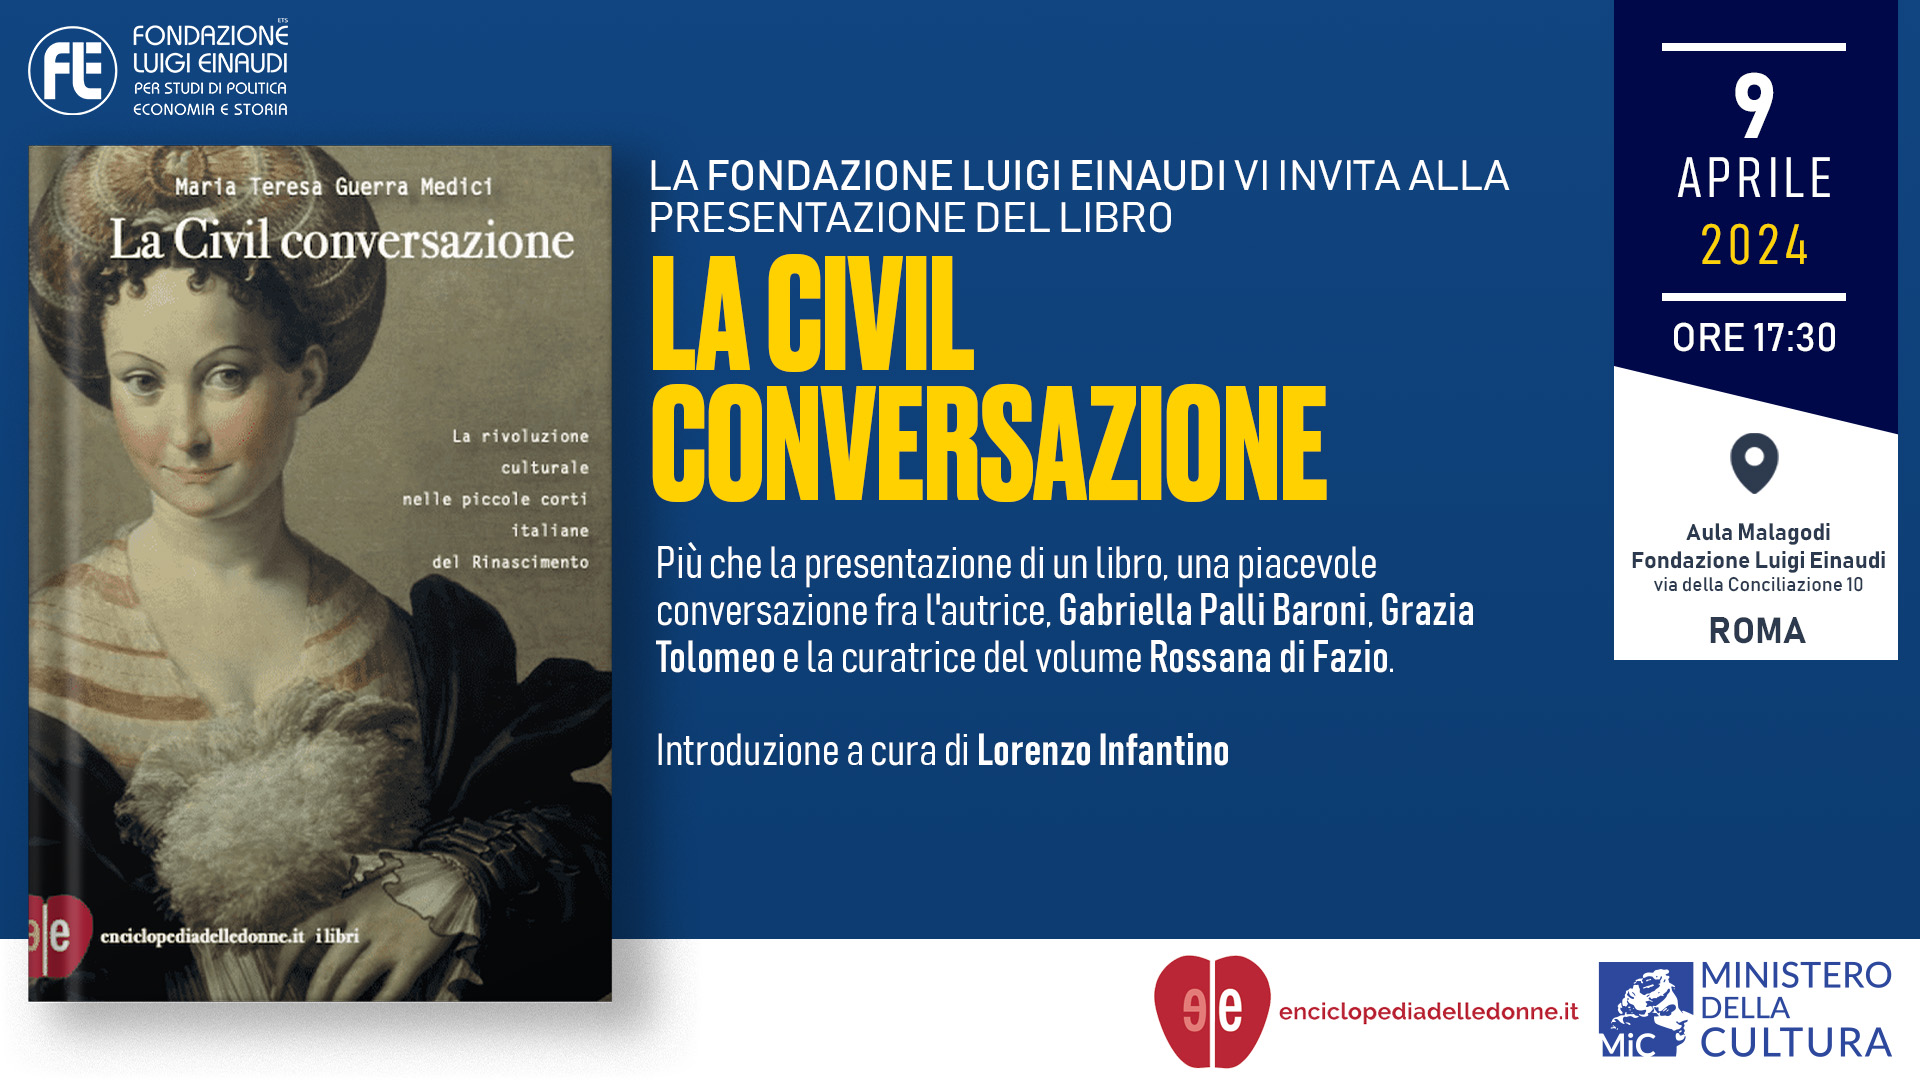 Presentazione del libro “Civil conversazione” di Maria Teresa Guerra Medici